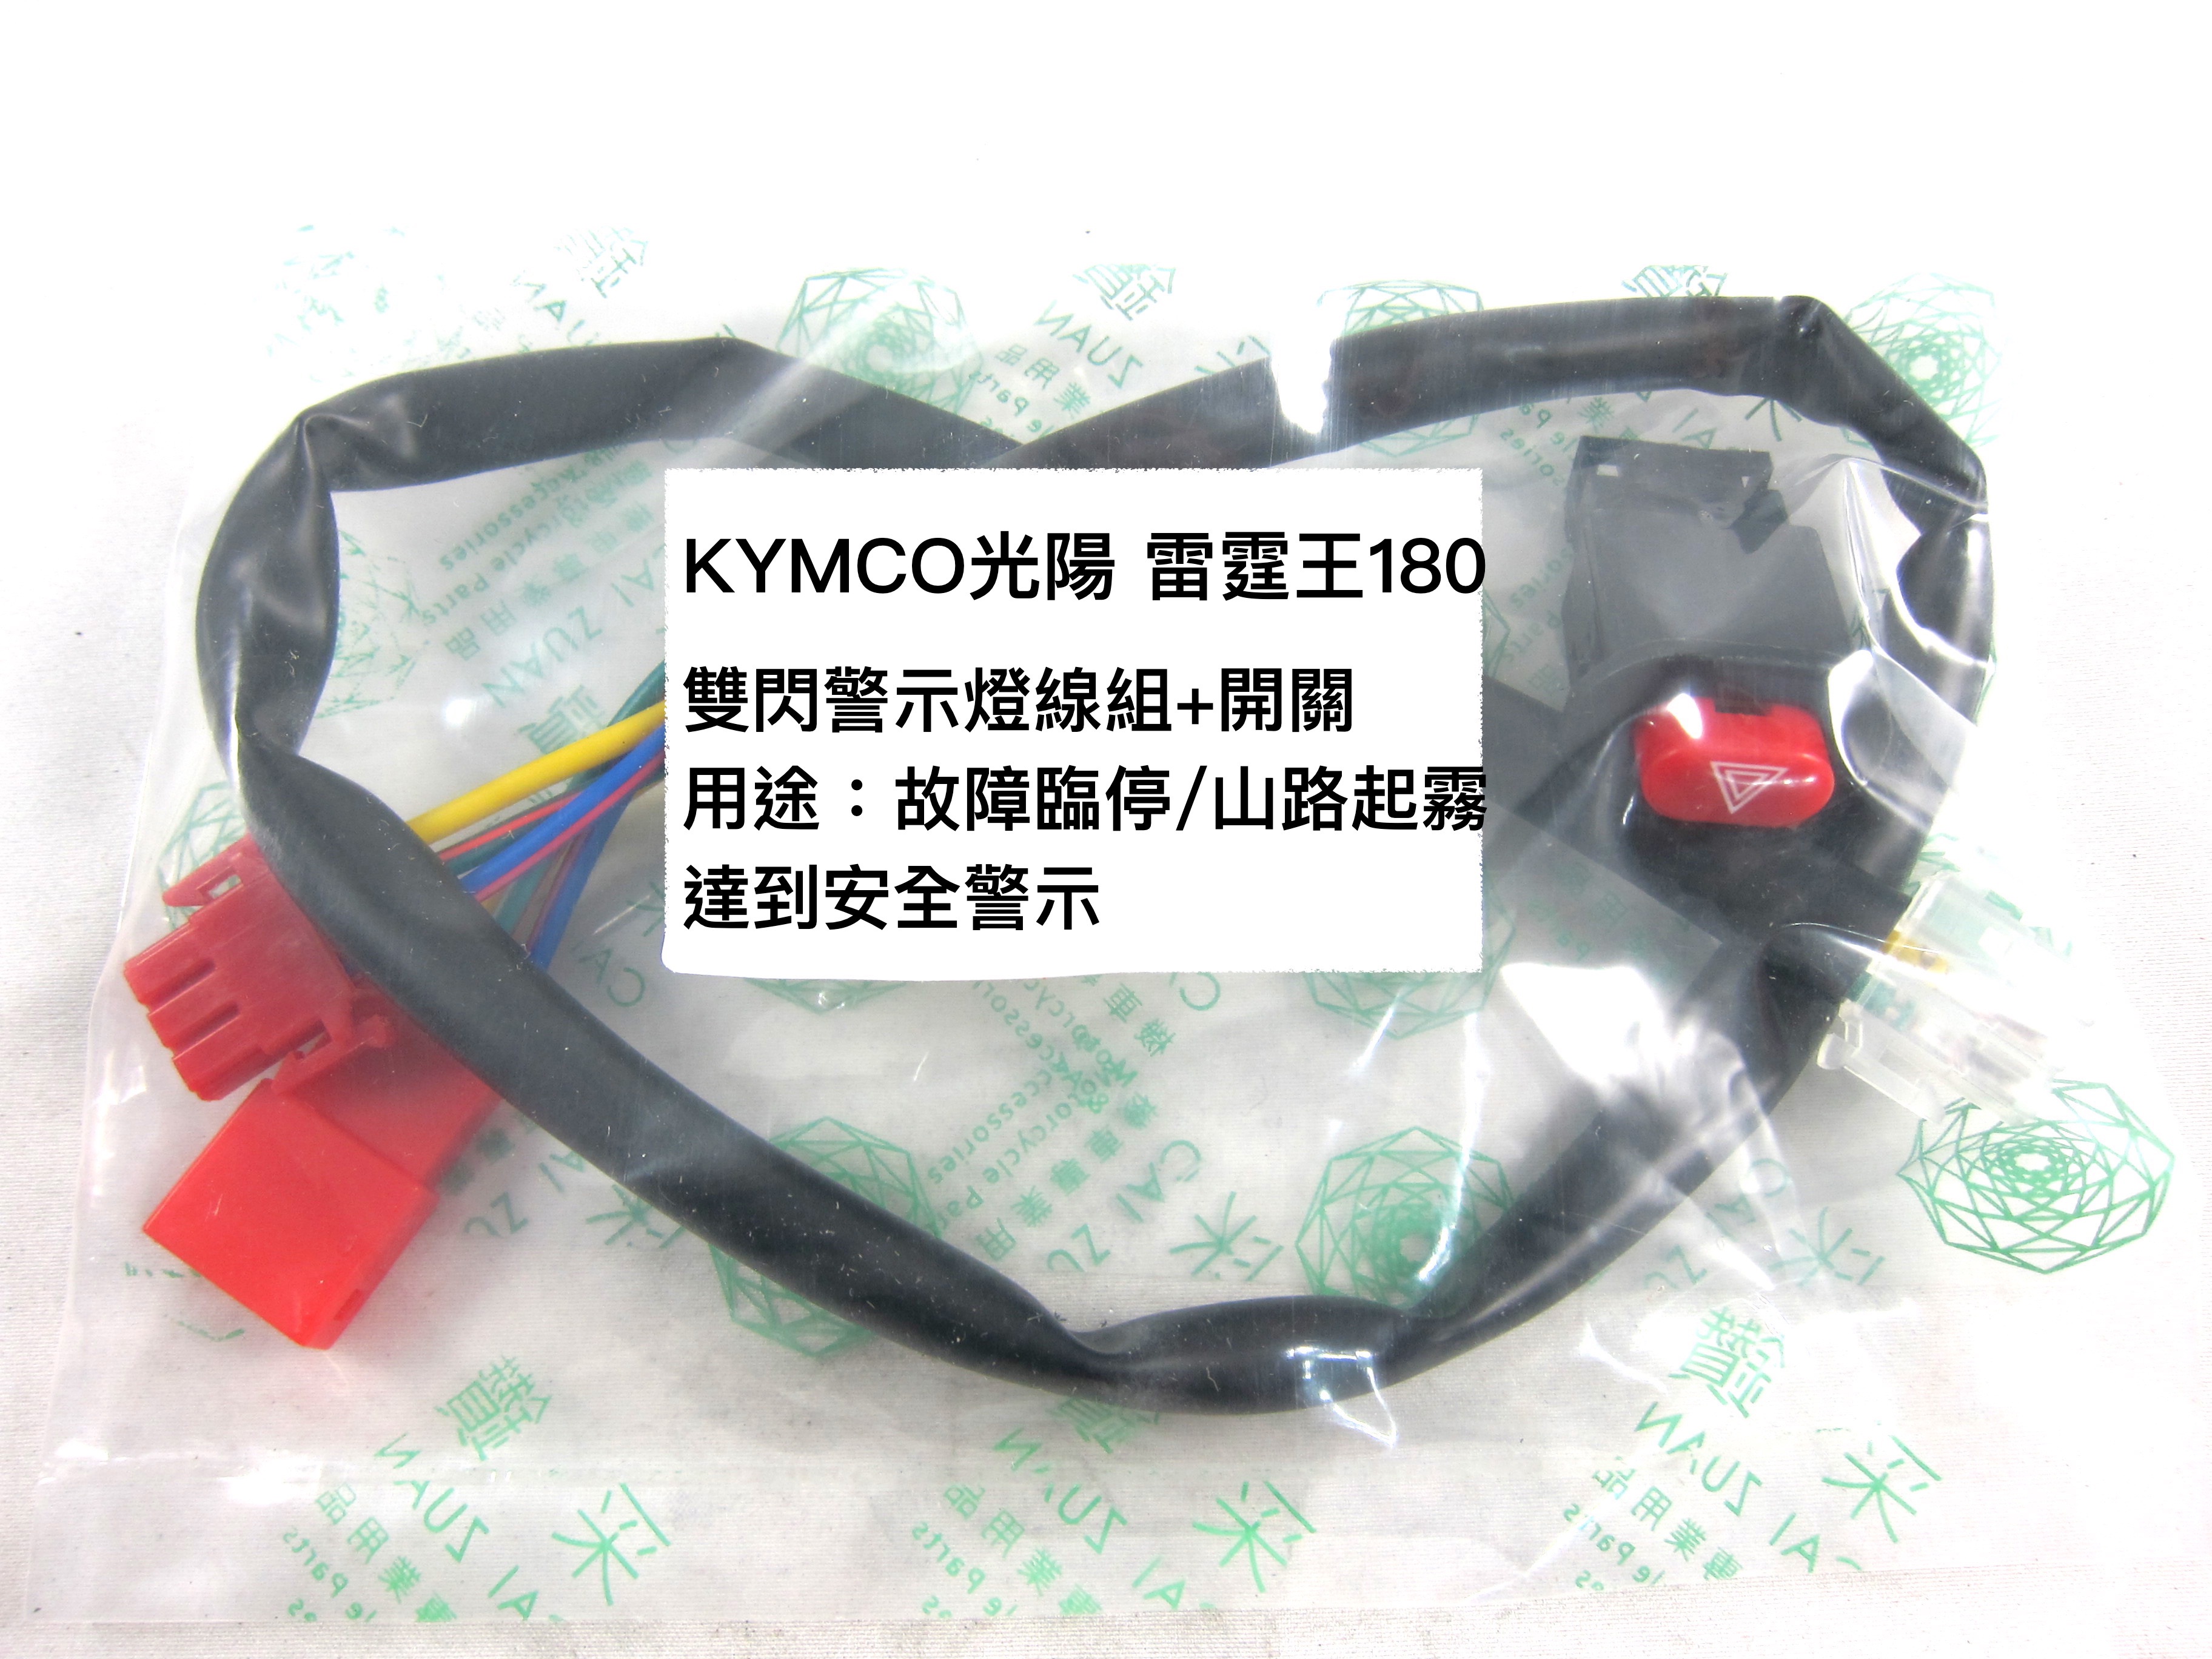 KYMCO光陽 雷霆王180 機車警示燈功能線組+開關 按雙閃提醒後方來車 警示功能 與汽車相同概念 采鑽公司貨